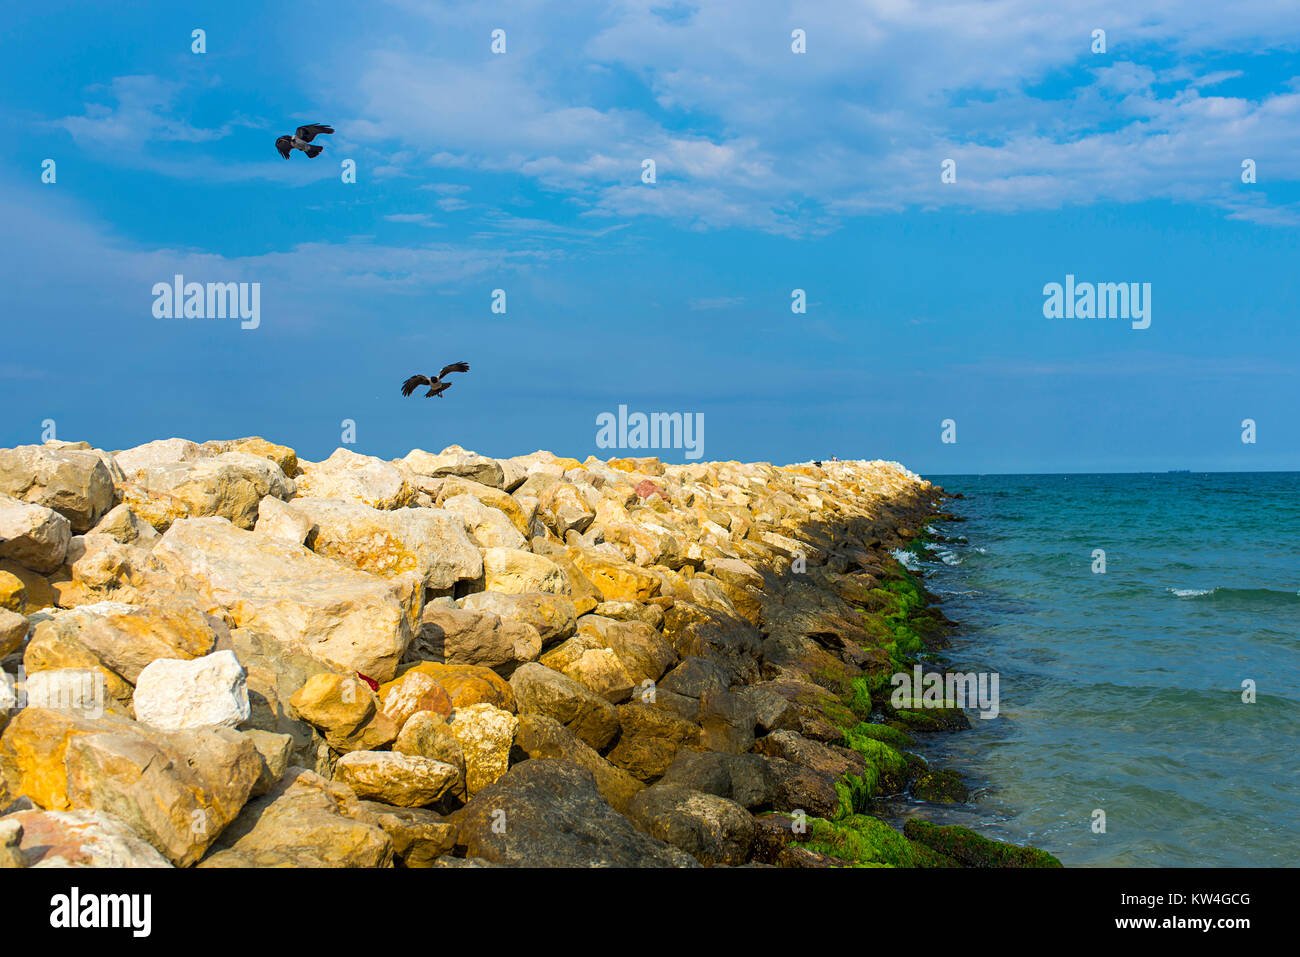 Les oiseaux dans un cay sur la mer Noire en Roumanie Banque D'Images